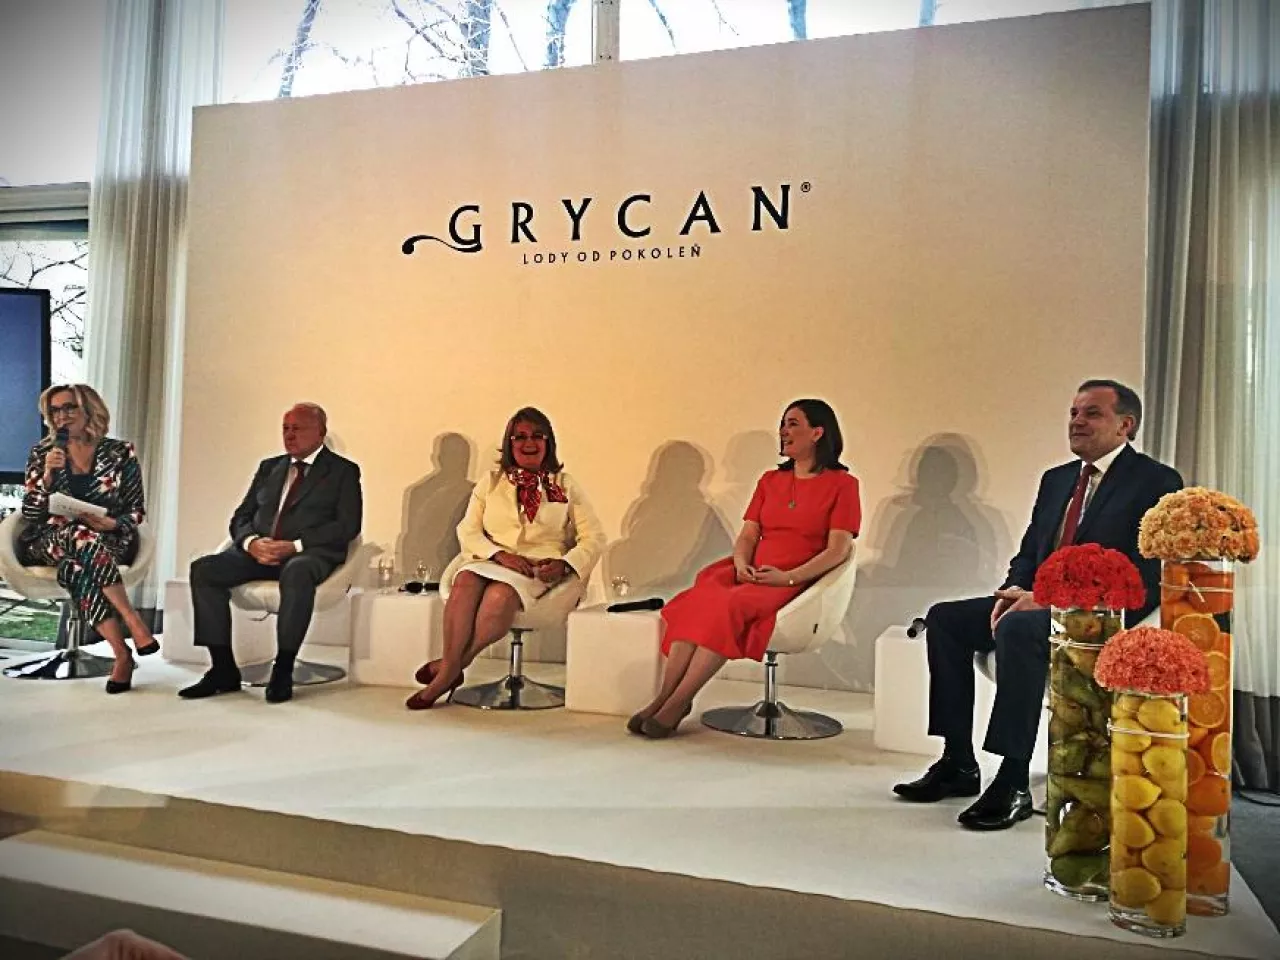 Przedstawiciele firmy Grycan na corocznej konferencji inaugurującej start sezonu lodowego (Fot. Anna Terlecka)